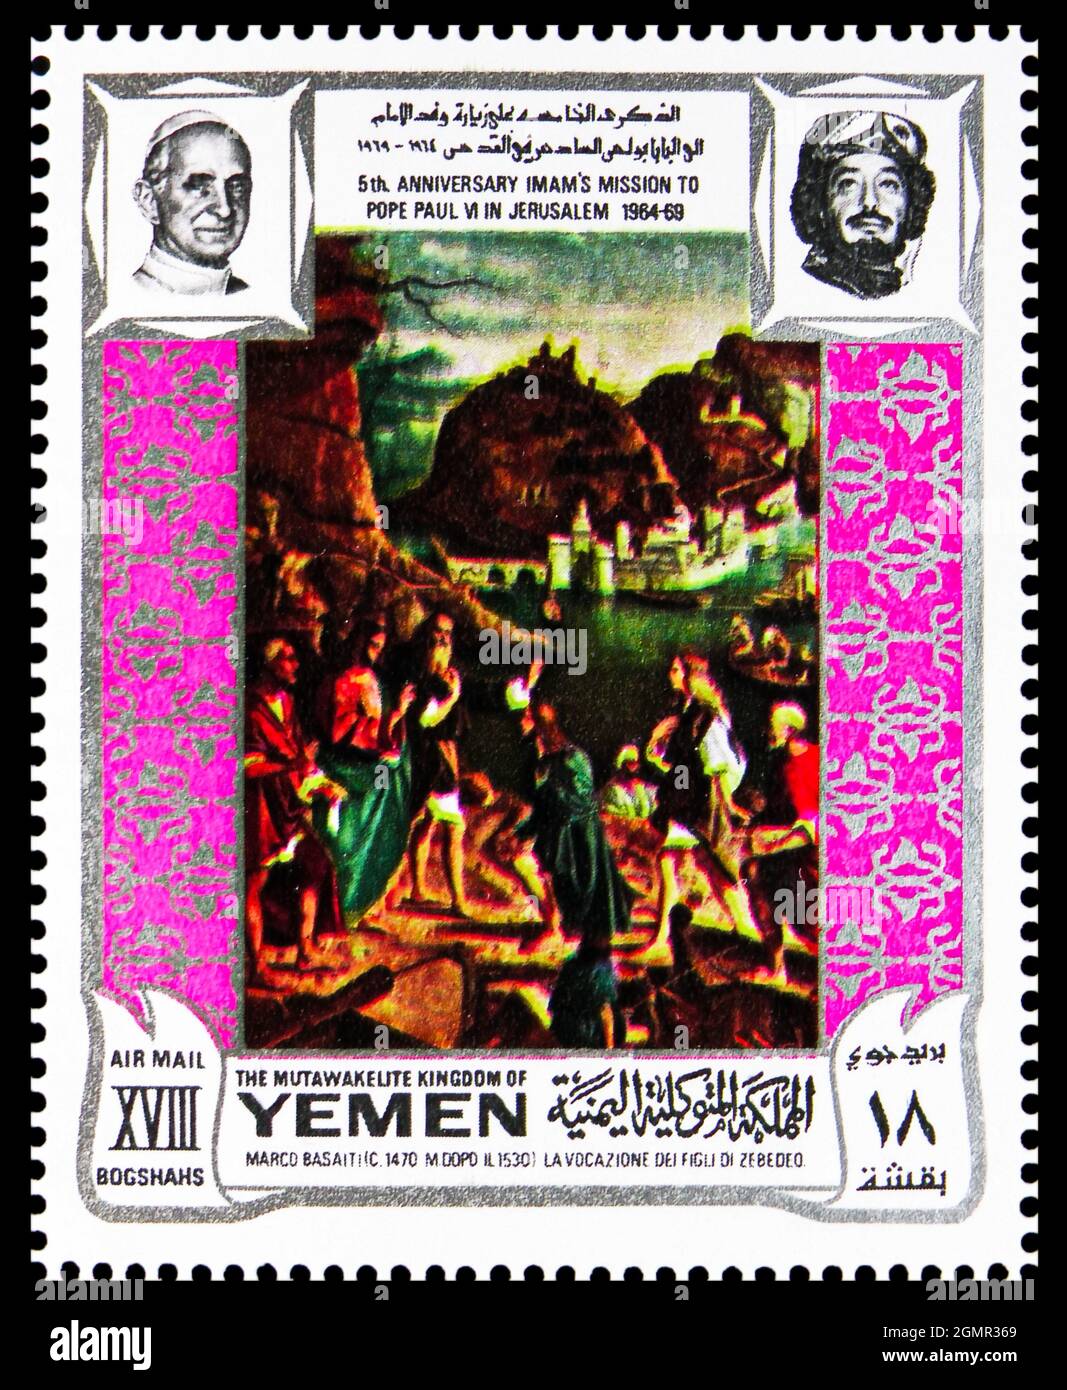 MOSCOW, RUSSIA - JULY 31, 2021: Postage stamp printed in Yemen shows La vocazione dei figli di Zebedeo, by Basaiti, 5th Anniversary of Paul VI Visit t Stock Photo